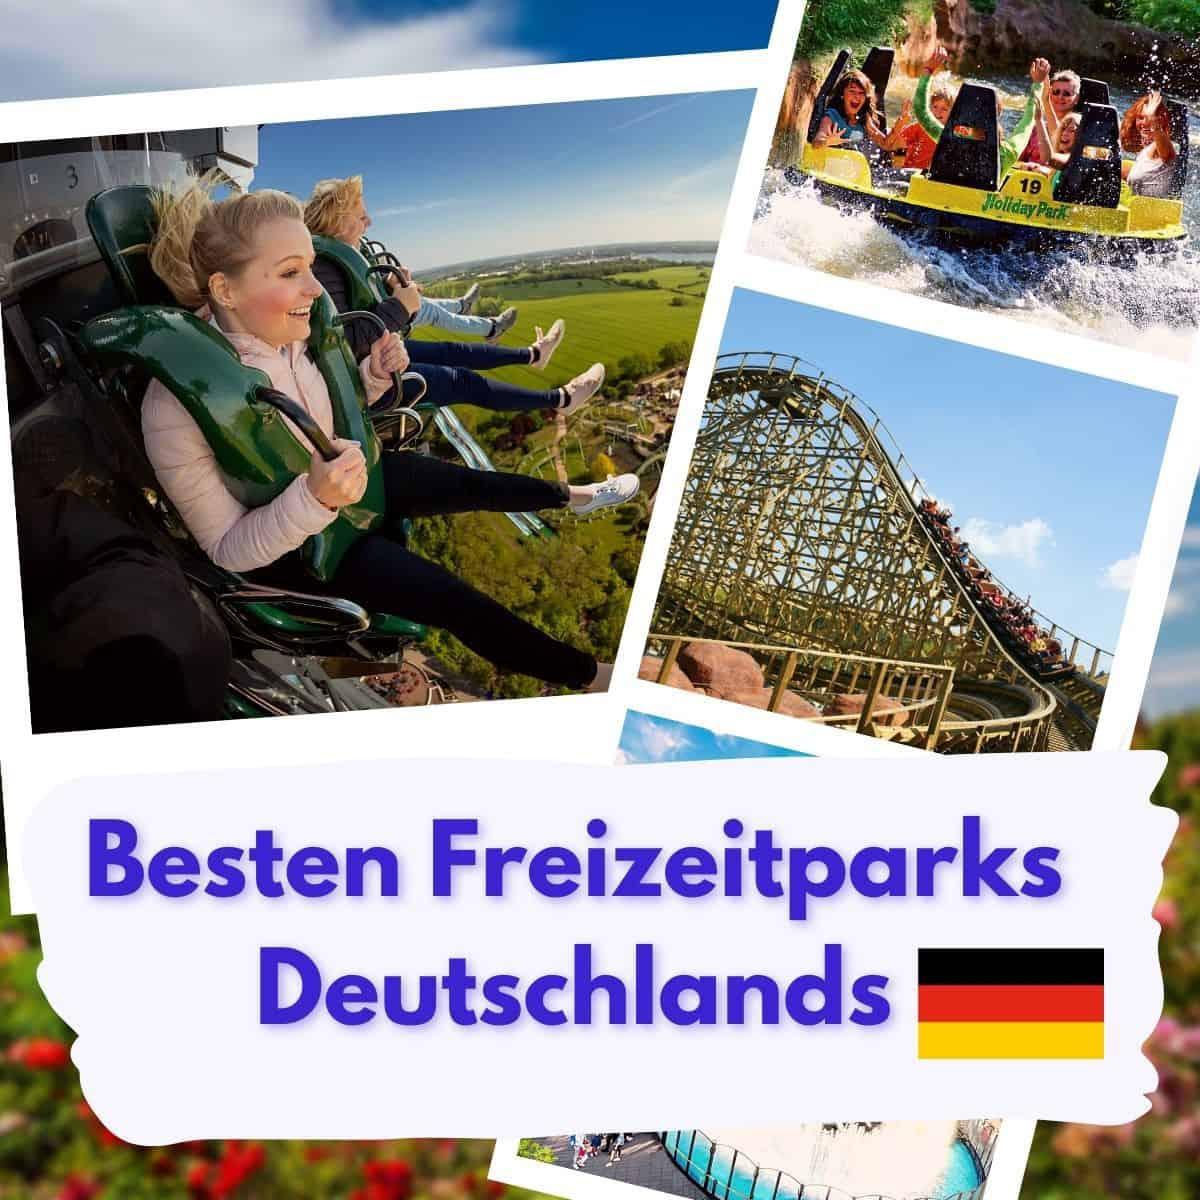 Bei AbenteuerFreizeit findest du die besten Freizeitpark Angebote und Rabatte. Egal ob das Phantasialand in Brühl bei Köln, der Europa-Park in Rust, Movie World, das Heide Park Resort oder der Erlebnispark Tripsdrill bei Stuttgart. Hier findest du Informationen zu allen Freizeit- und Erlebnisparks.